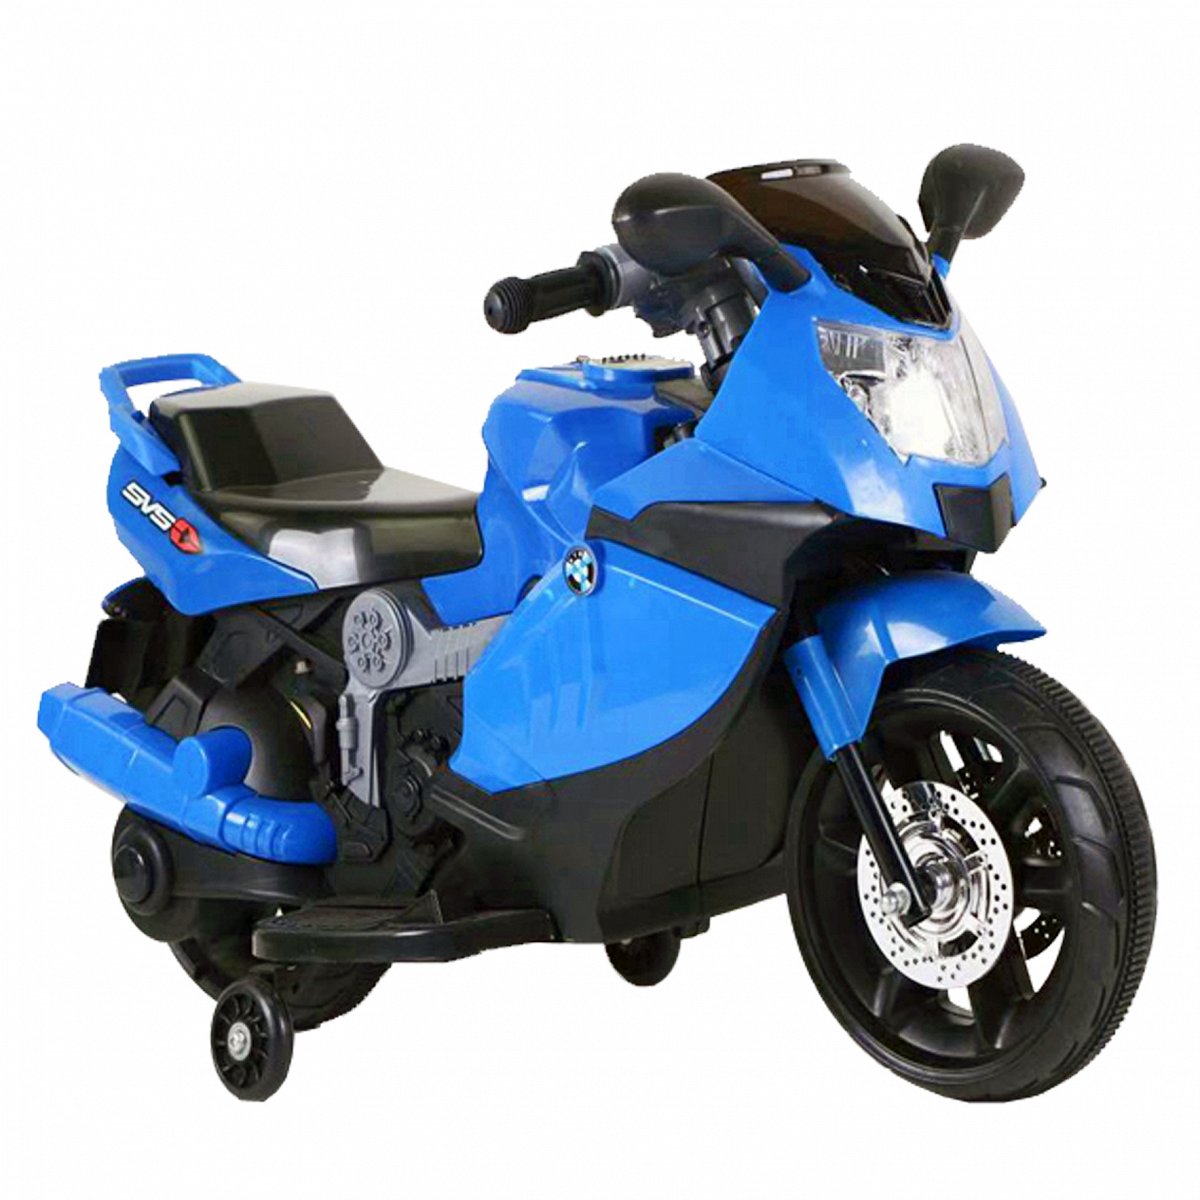 Motocicleta electrica copii C-Toys cu acumulator, muzica, roti detasabile si lumini, culoare albastru, reducere mare